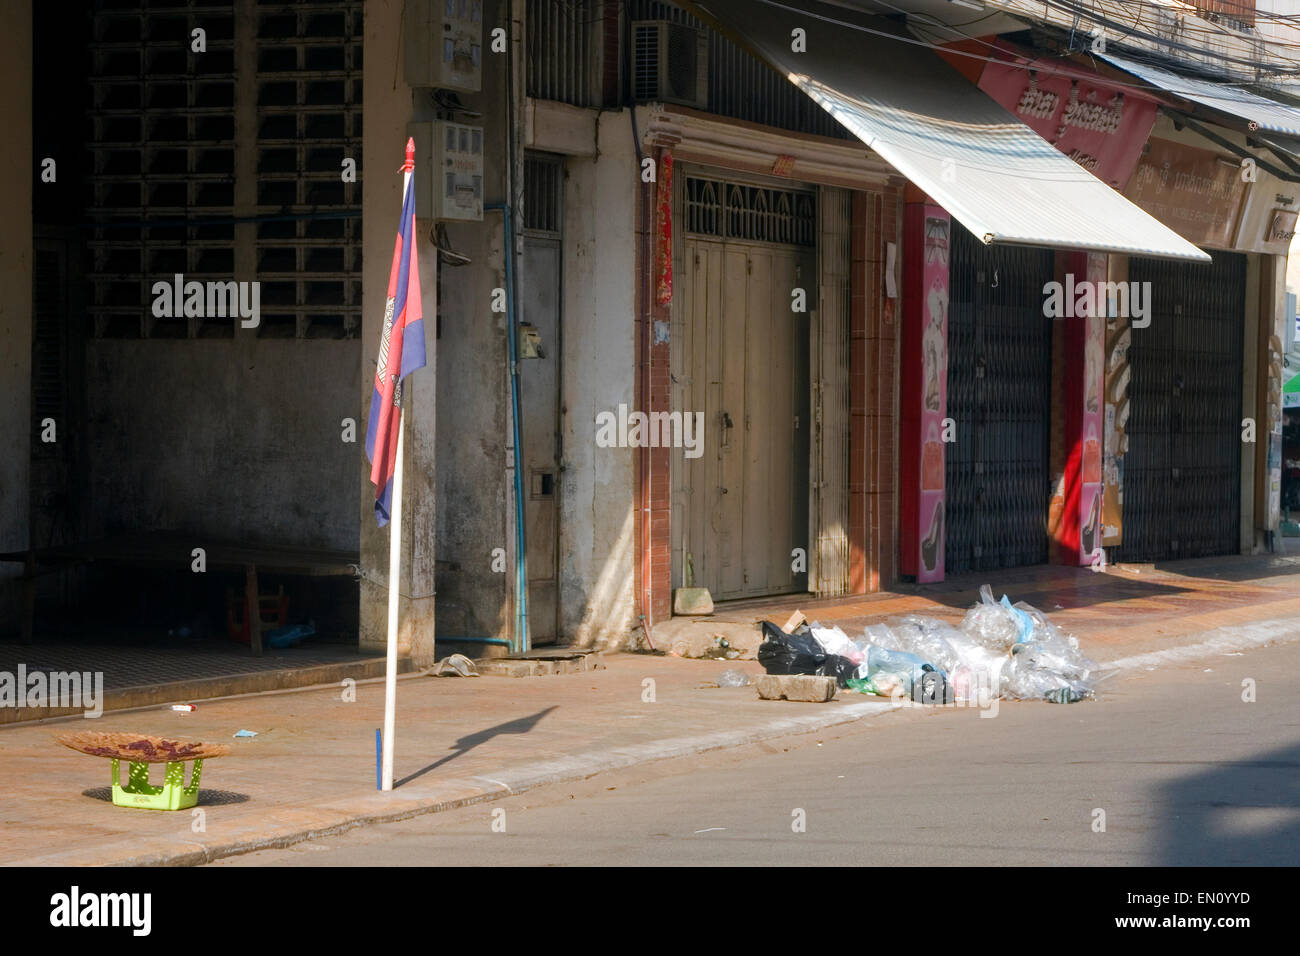 Kambodschanischen Flagge ist in der Nähe von einem Haufen Müll auf einer verlassenen Stadtstraße in Kampong Cham, Kambodscha angezeigt. Stockfoto